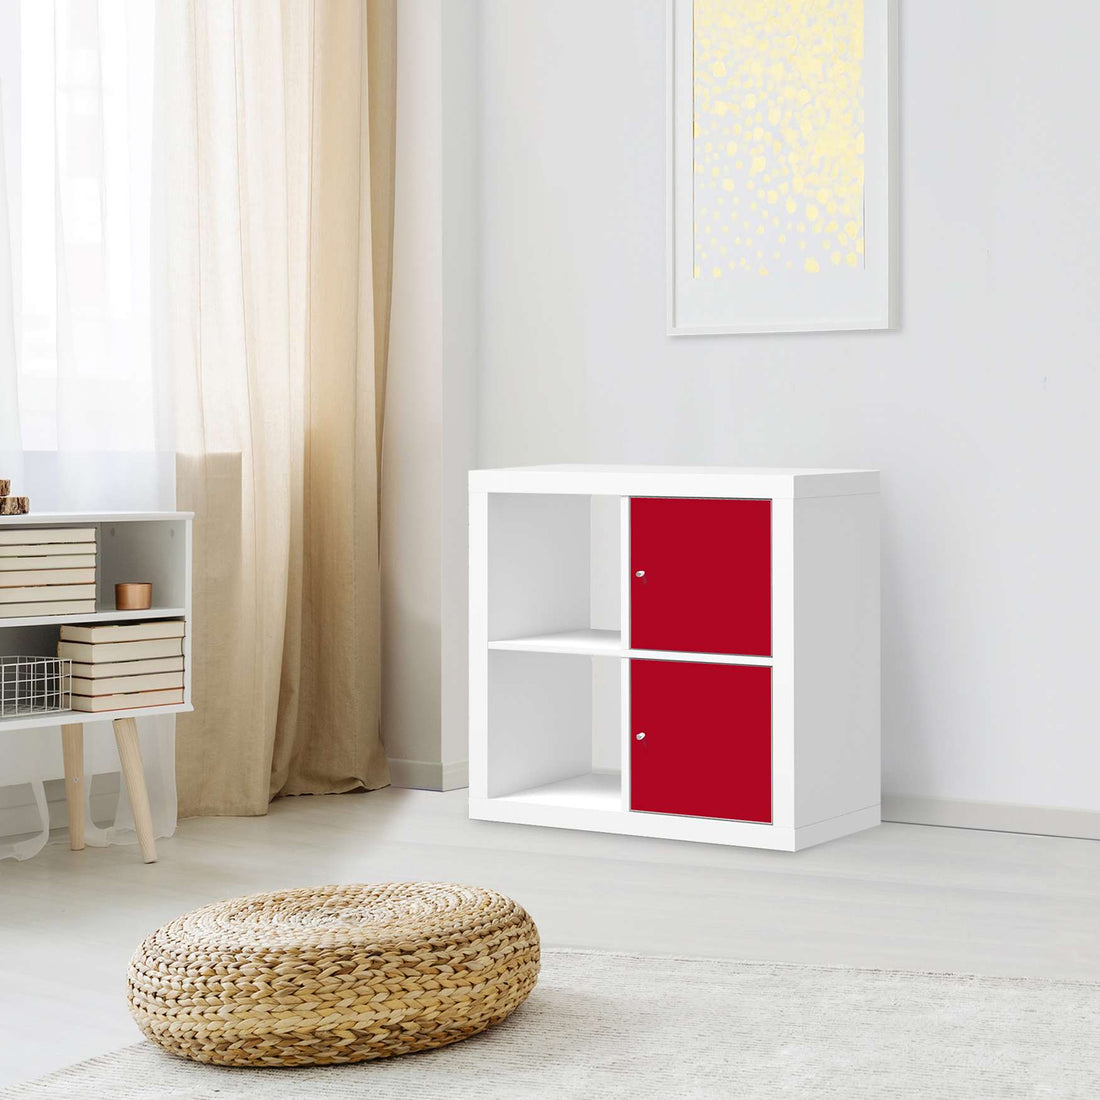 Klebefolie für Möbel Rot Dark - IKEA Expedit Regal 2 Türen Hoch - Wohnzimmer